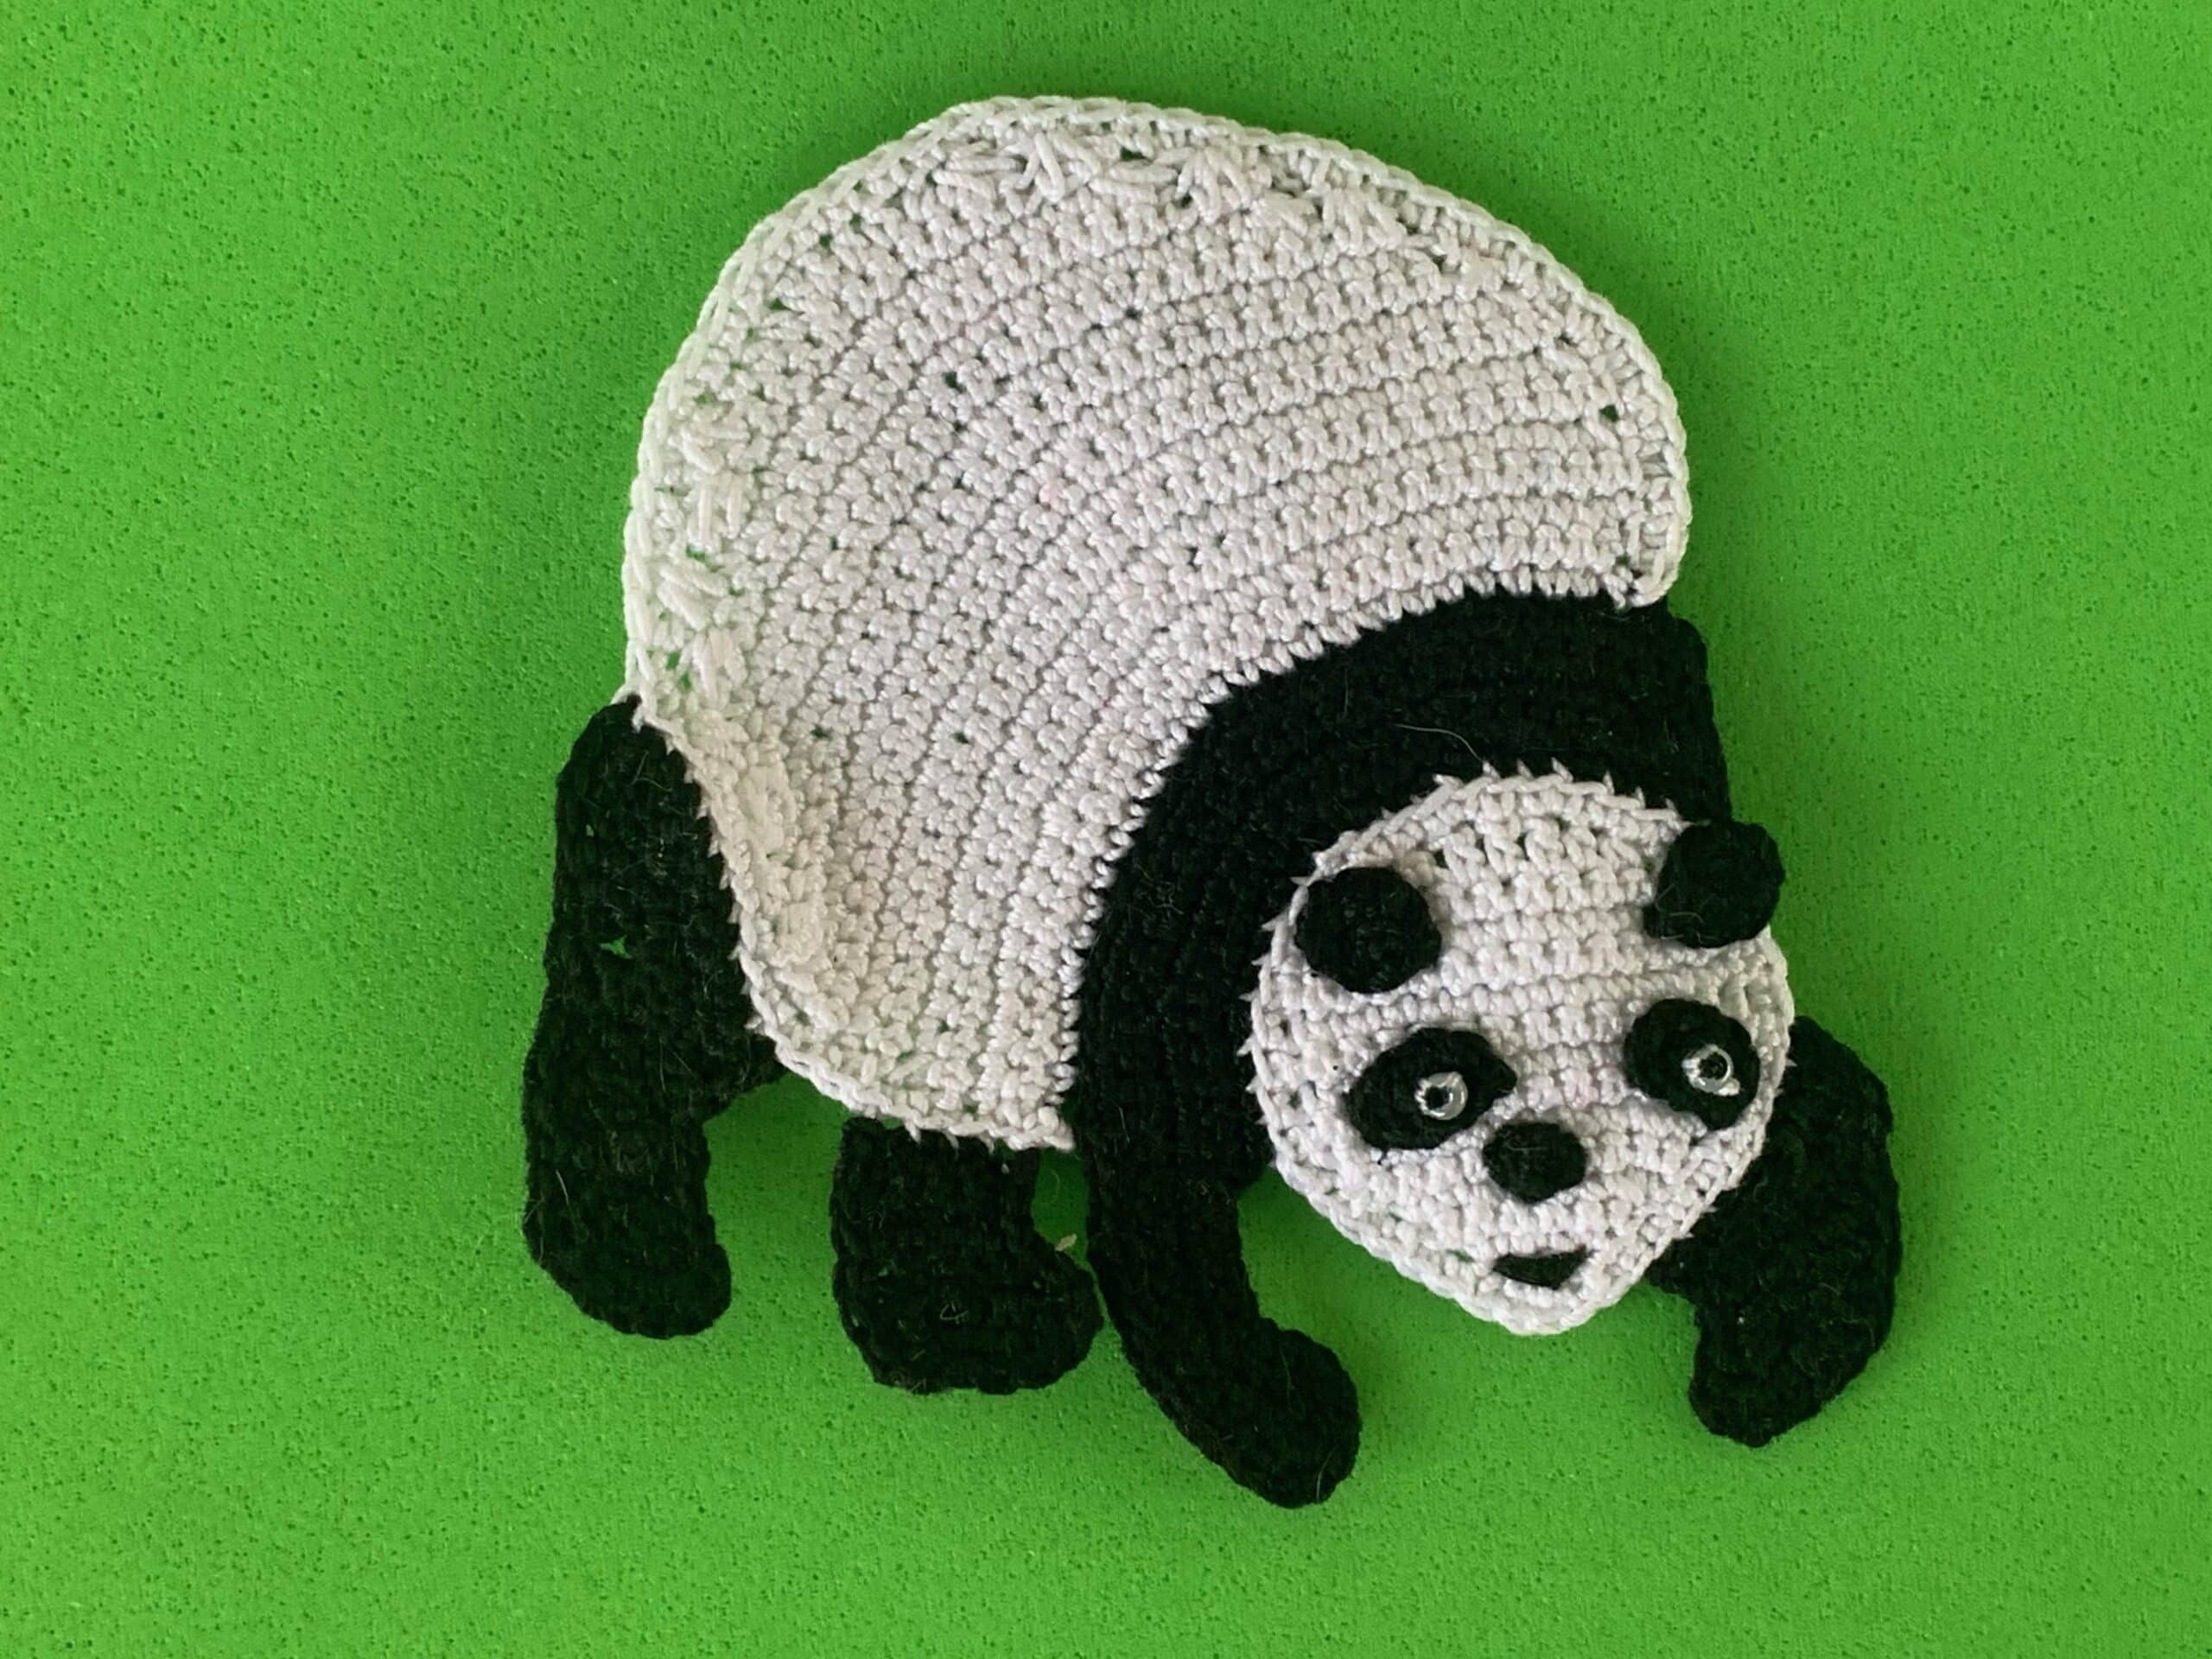 Finished crochet walking panda 2 ply landscape